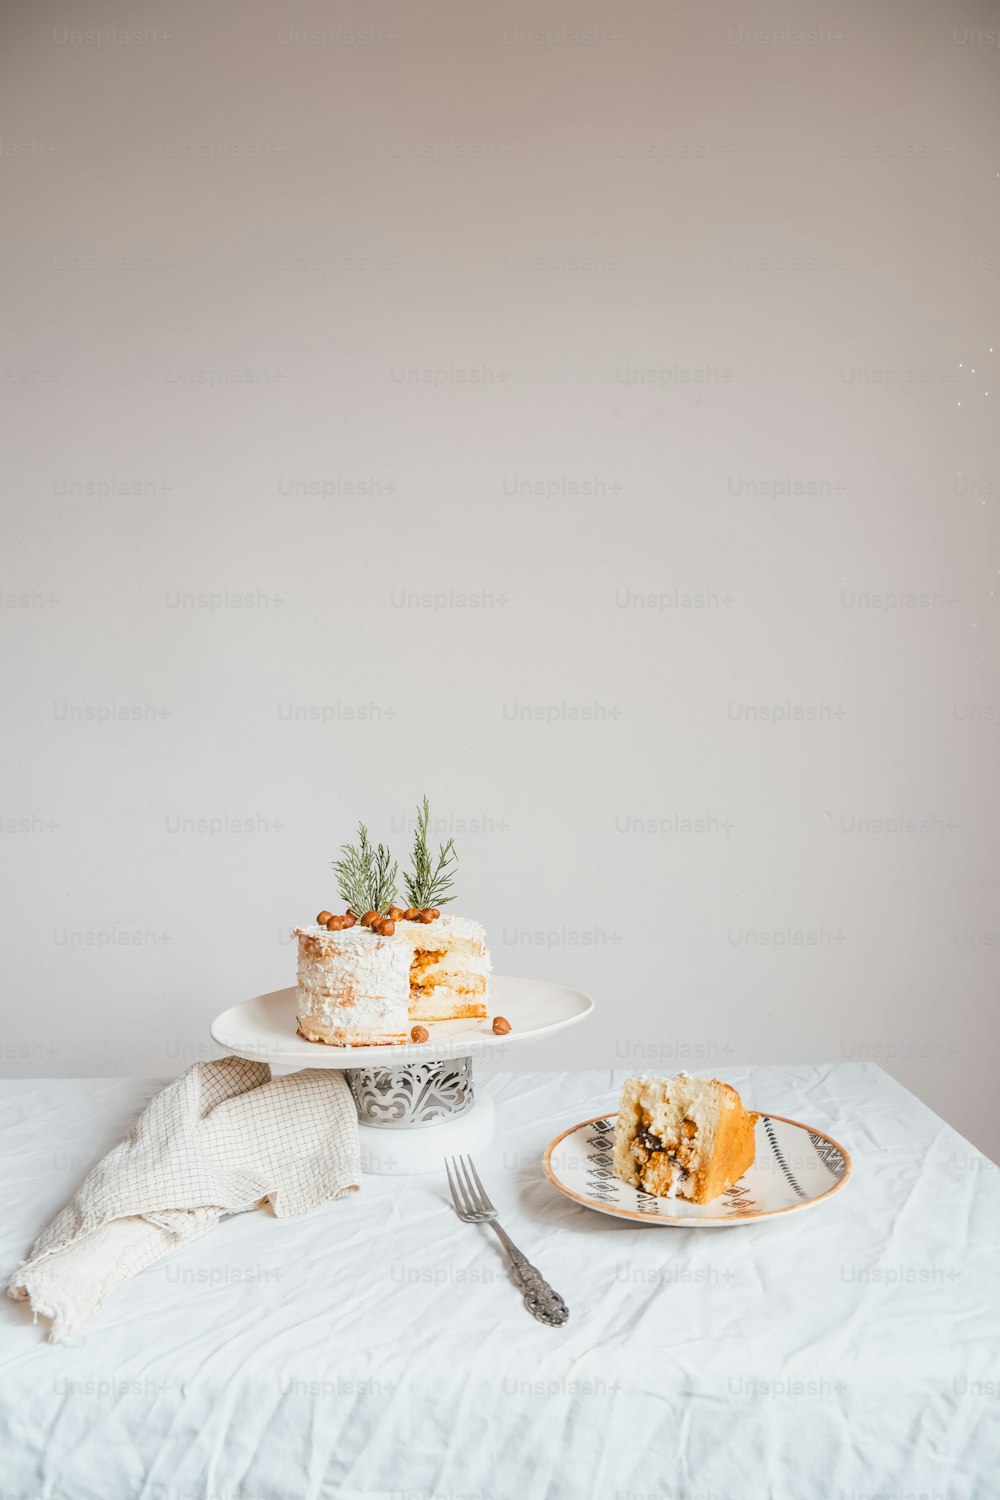 ケーキとフォークをトッピングした白いテーブル